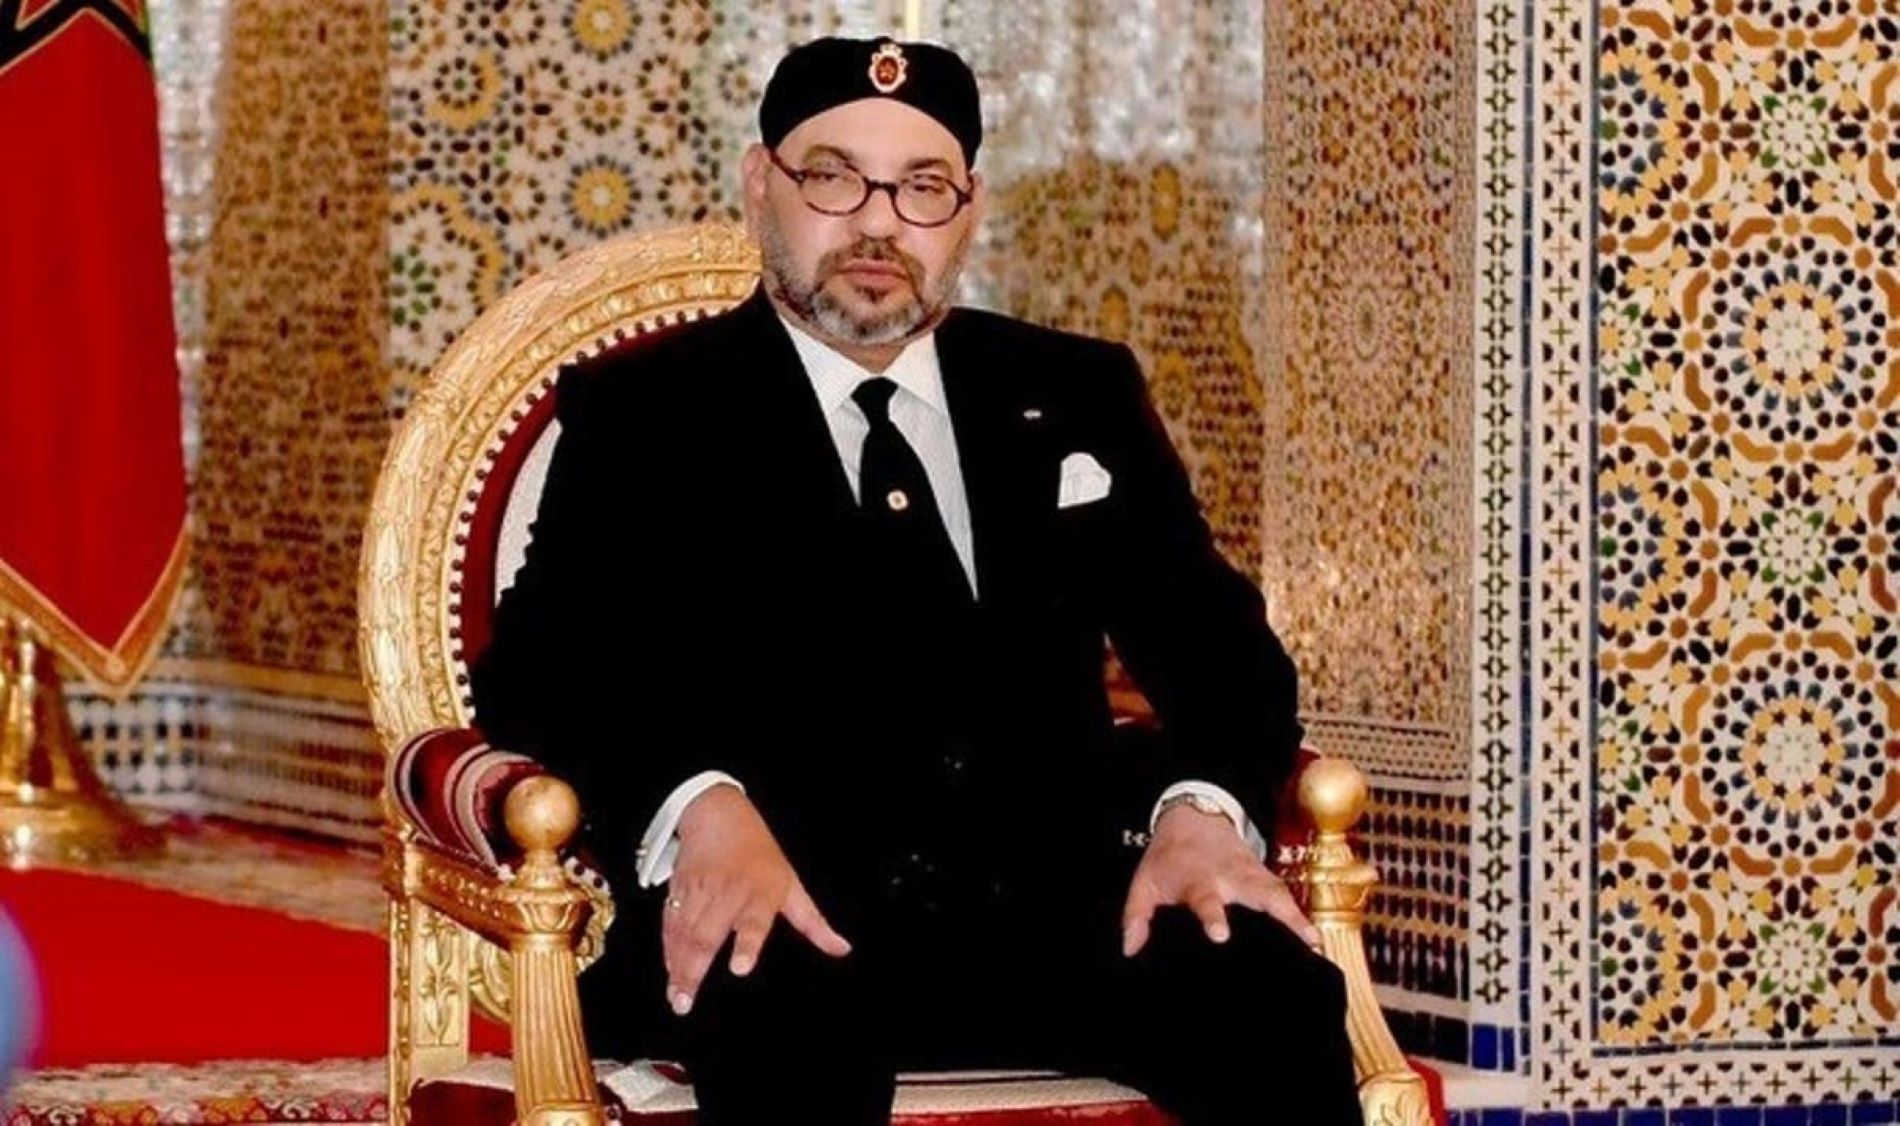 Mohamed VI del Marroc és el rei més pijo del món: es passeja com Franco